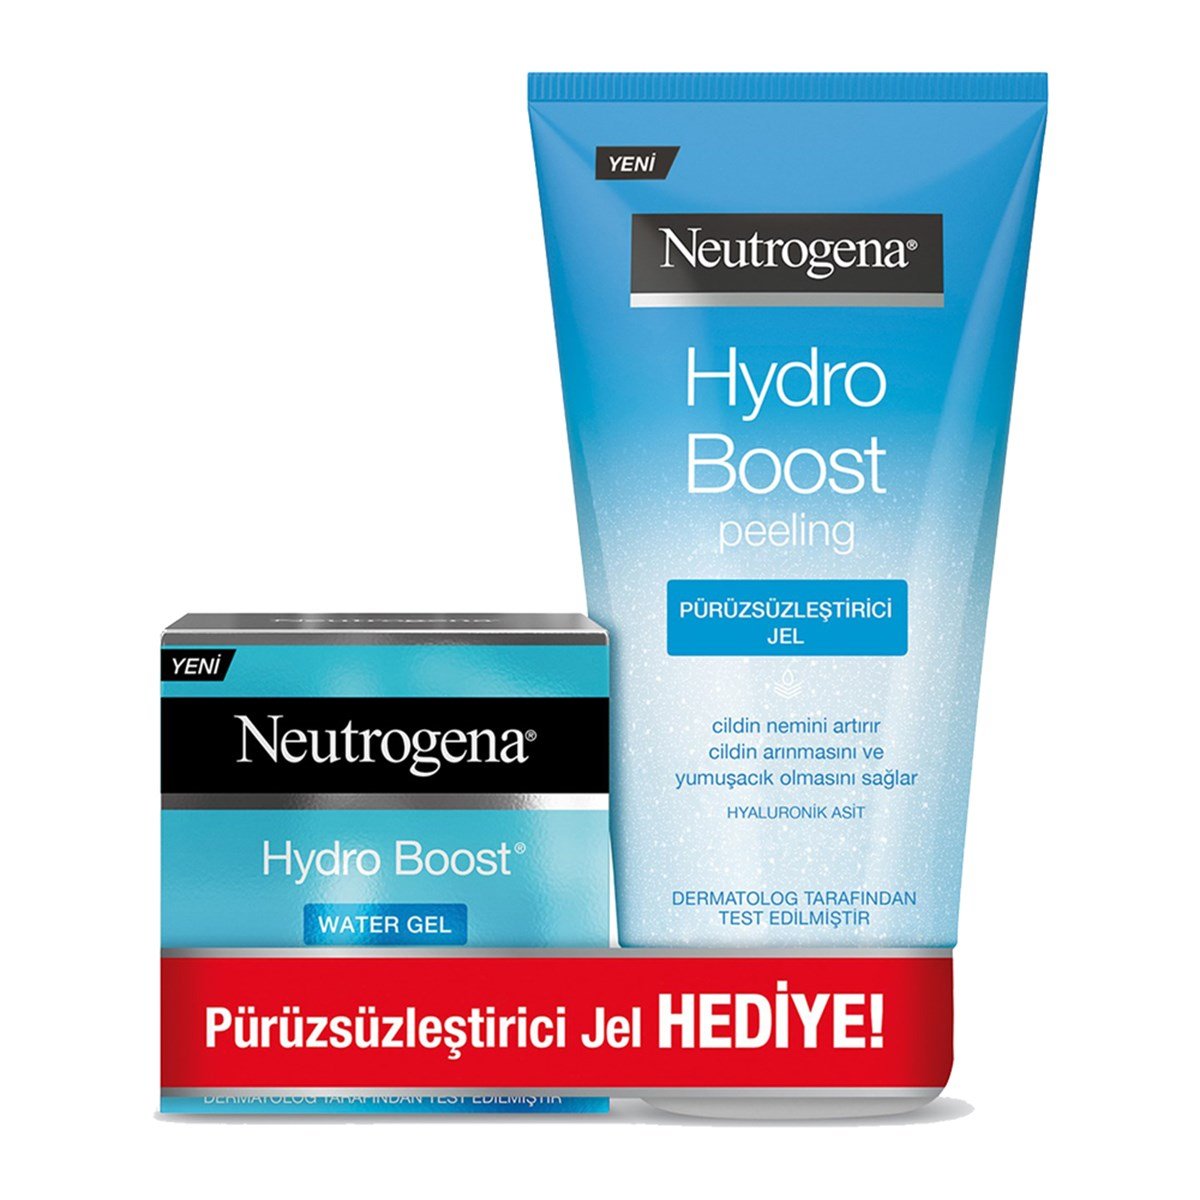 Neutrogena Hydro Boost Cilt Bakım Seti Yüz Kremi+Peeling Jeli - Platin